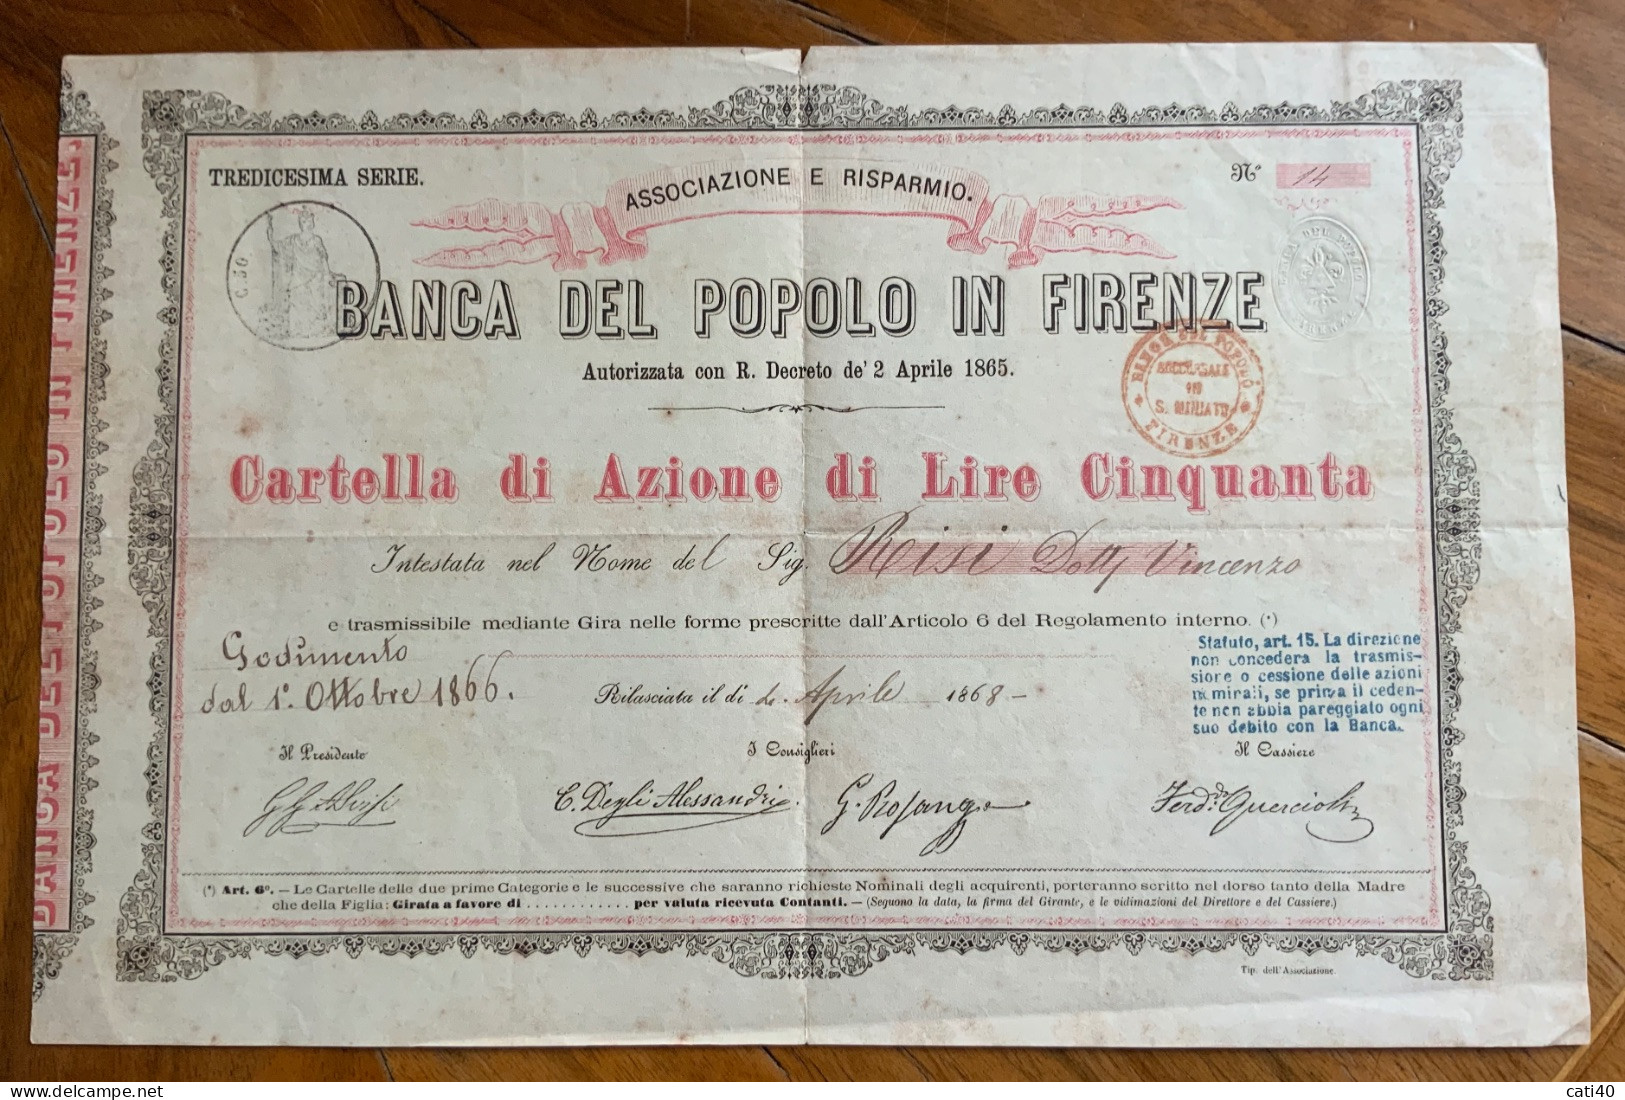 BANCA DEL POPOLO IN FIRENZE - CARTELLA DI AZIONE DA LIRE CINQUANTA - 1866  - TREDICESIMA SERIE - Transport